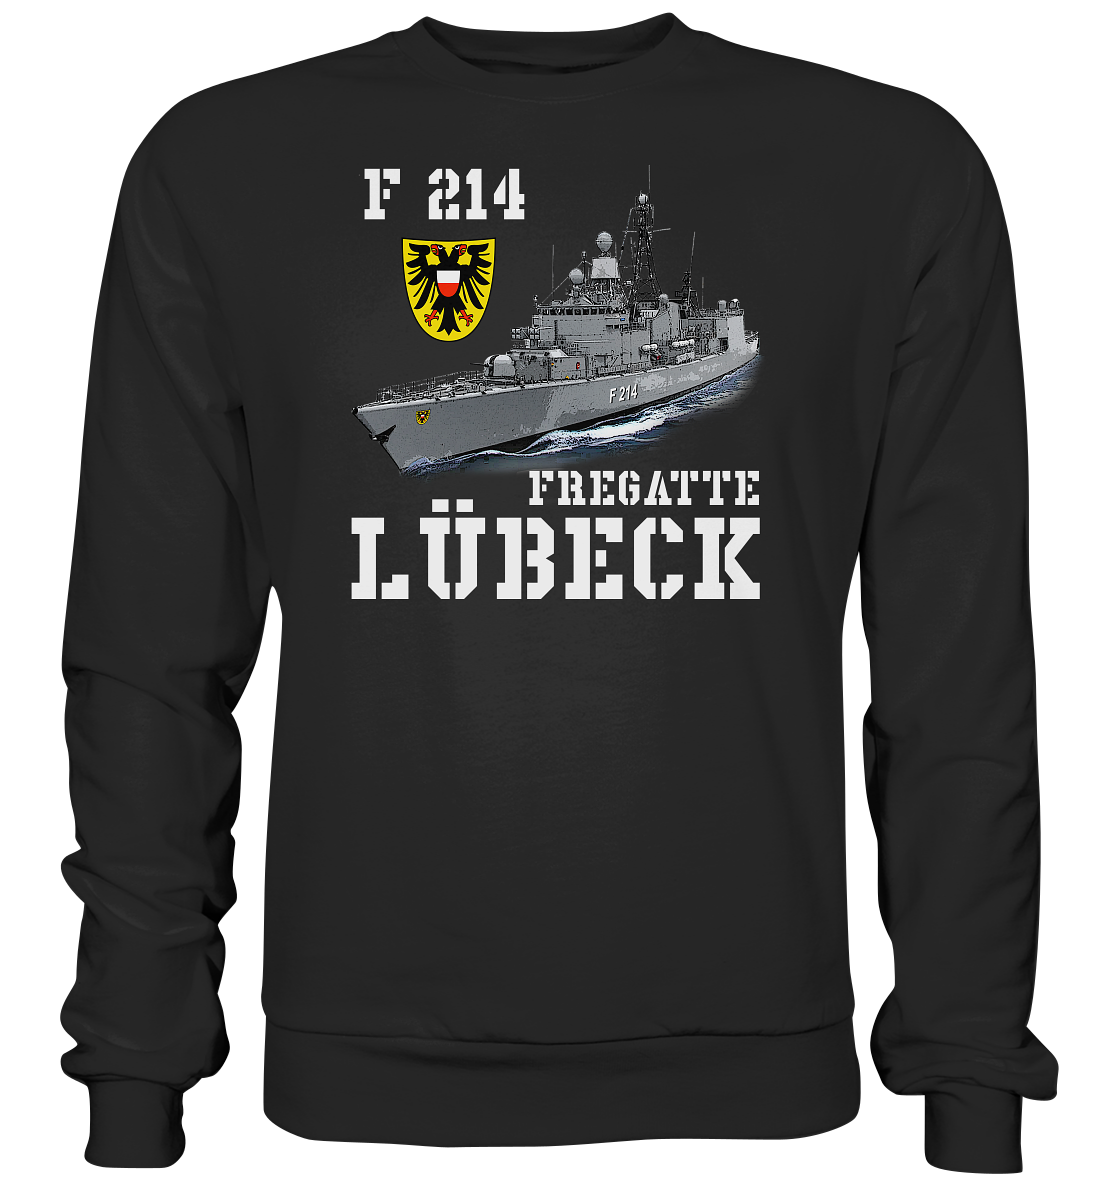 F214 Fregatte LÜBECK - Premium Sweatshirt